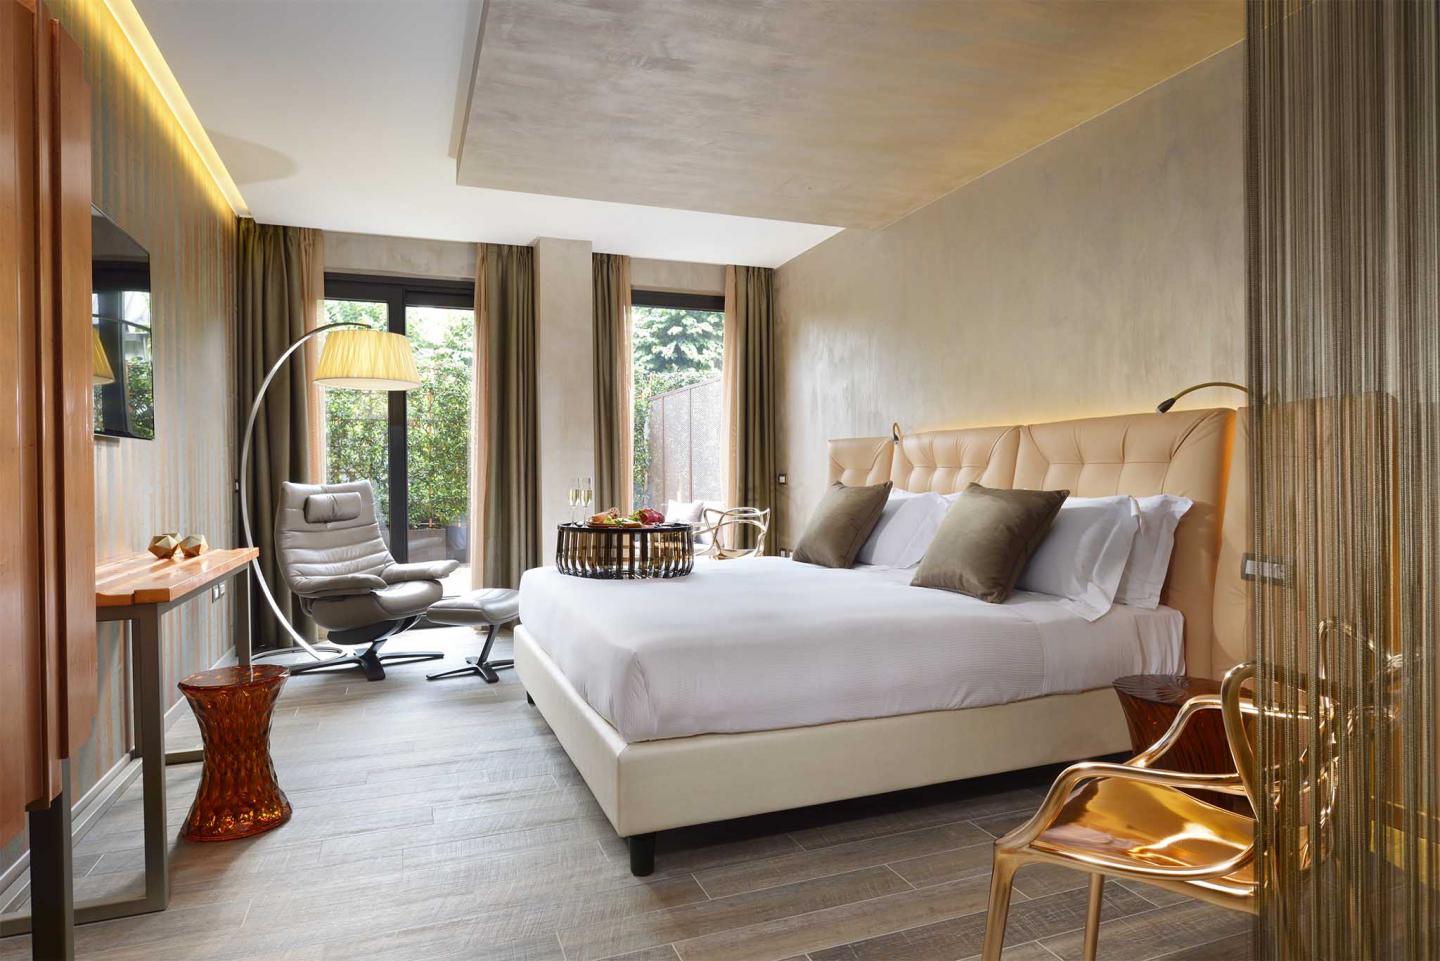 Tham khảo các tiêu chuẩn thiết kế phòng ngủ khách sạn